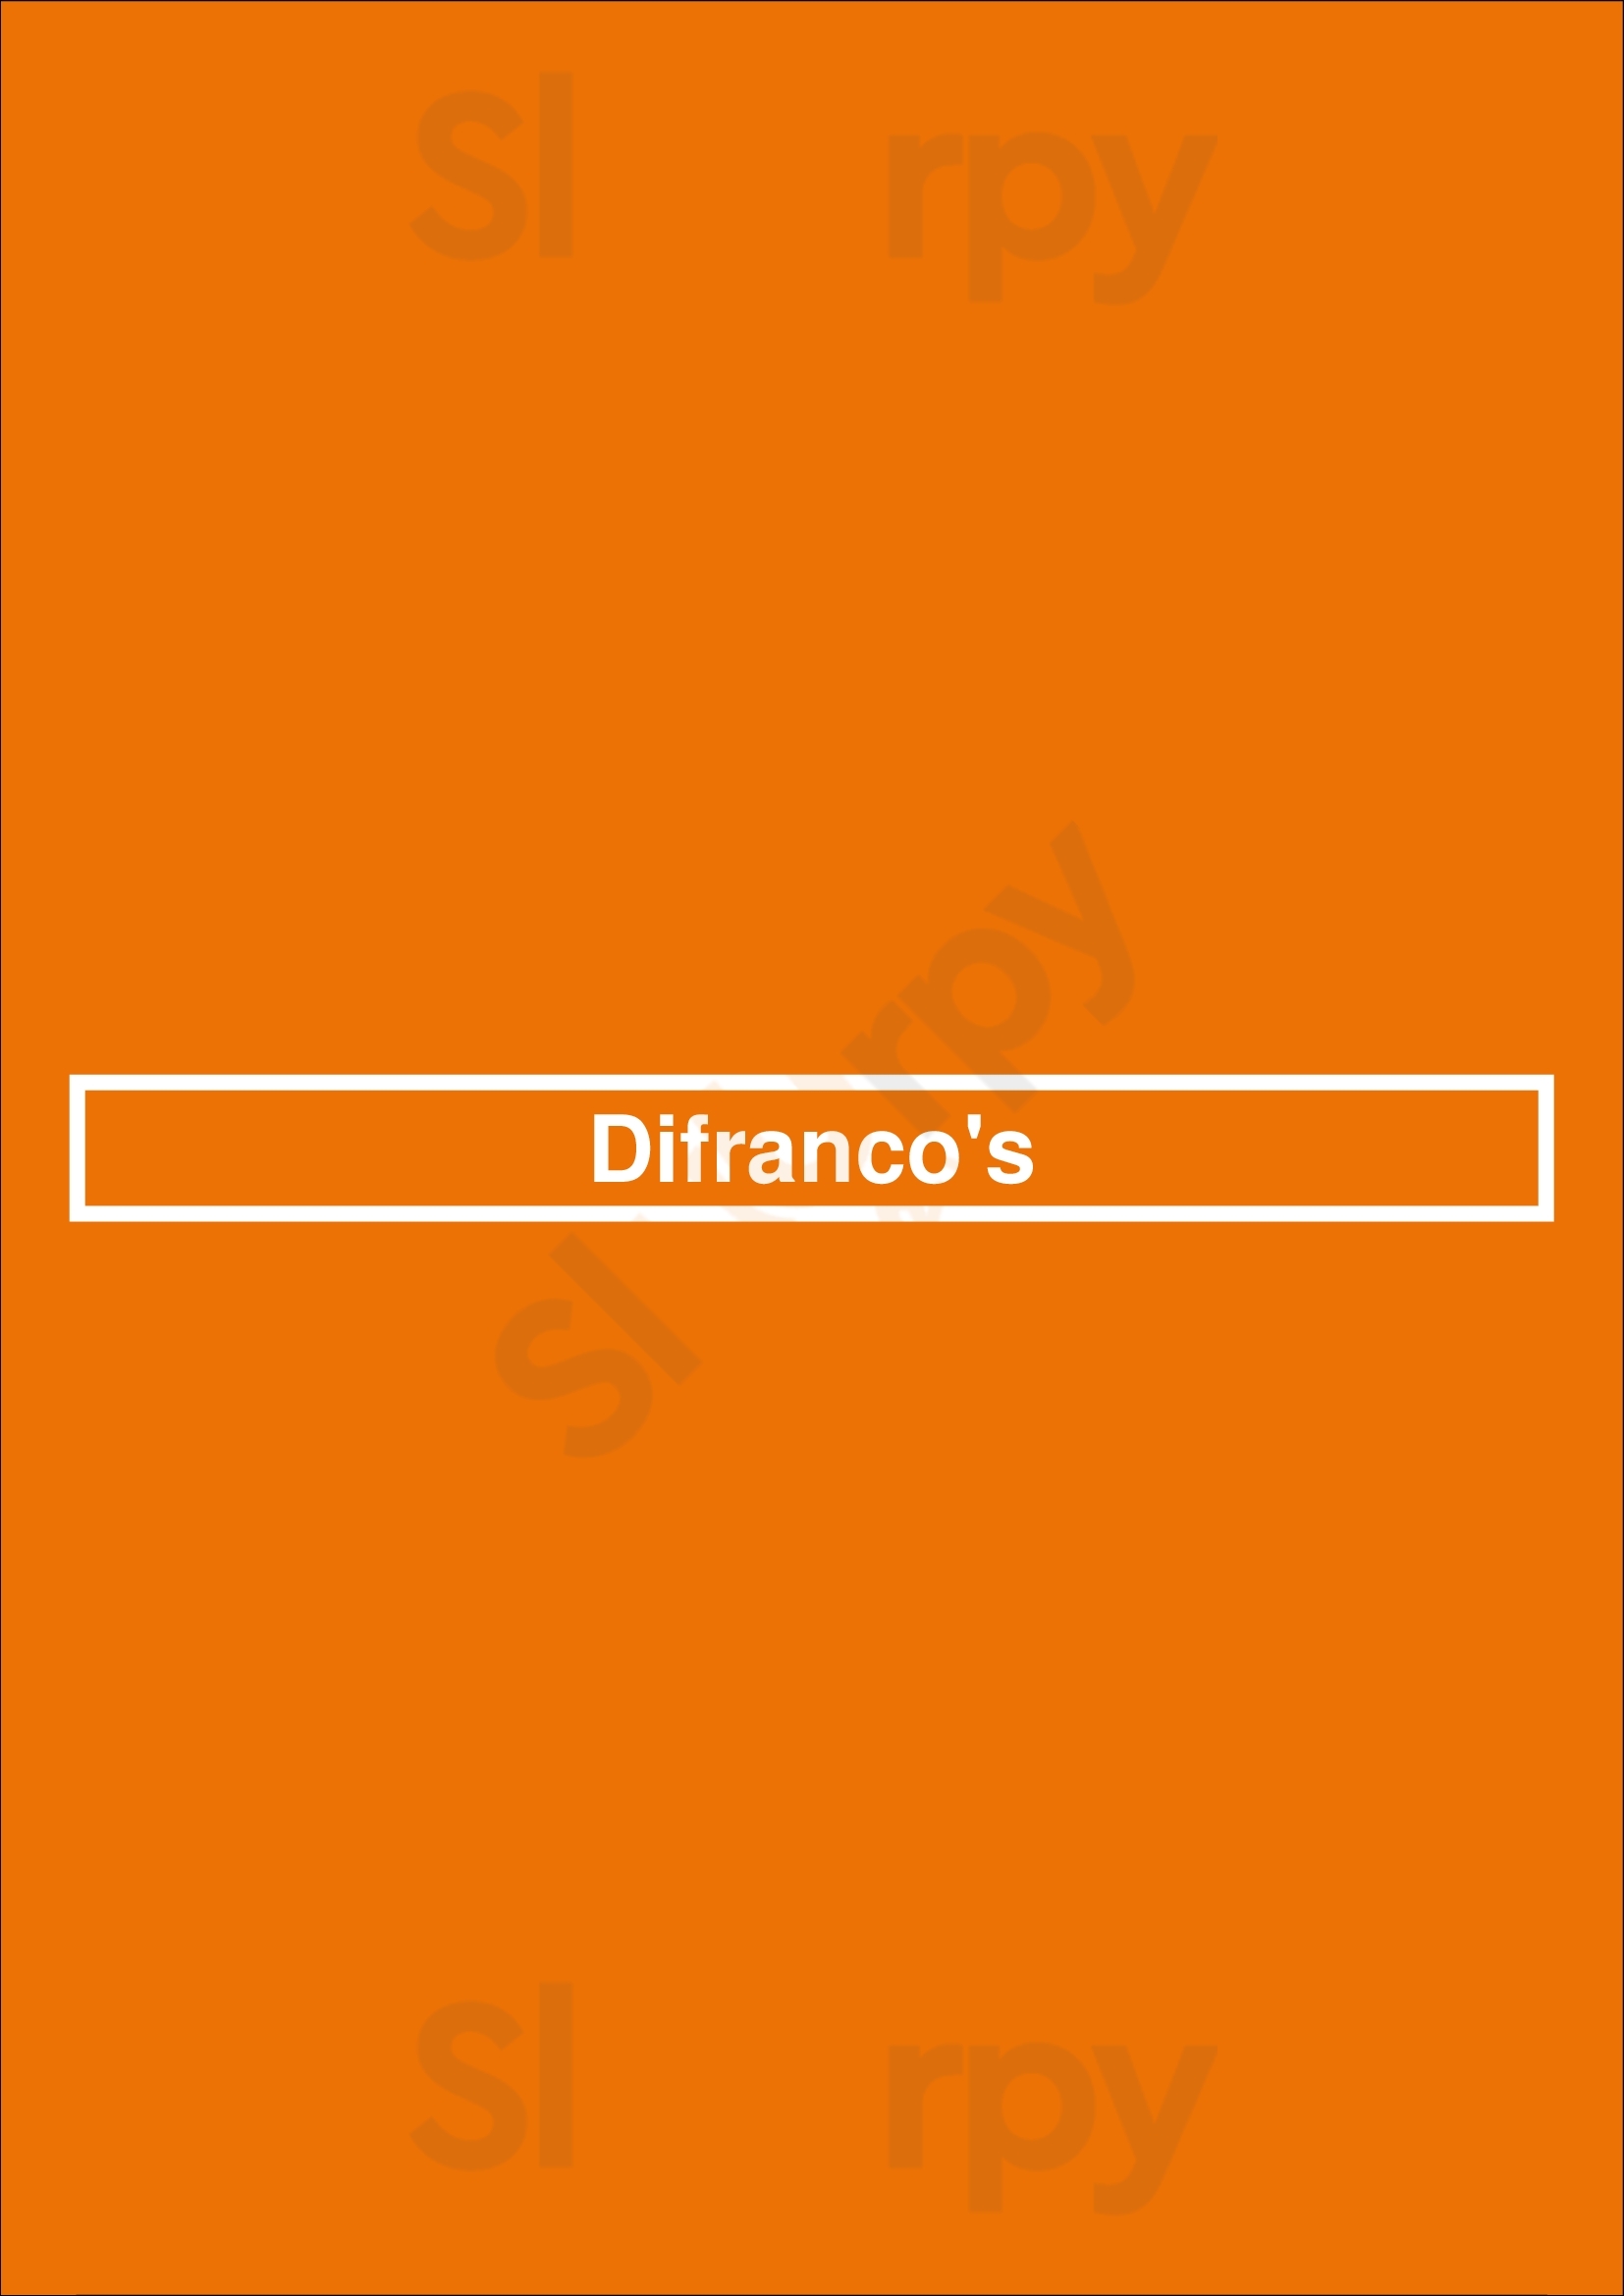 Difranco's Denver Menu - 1